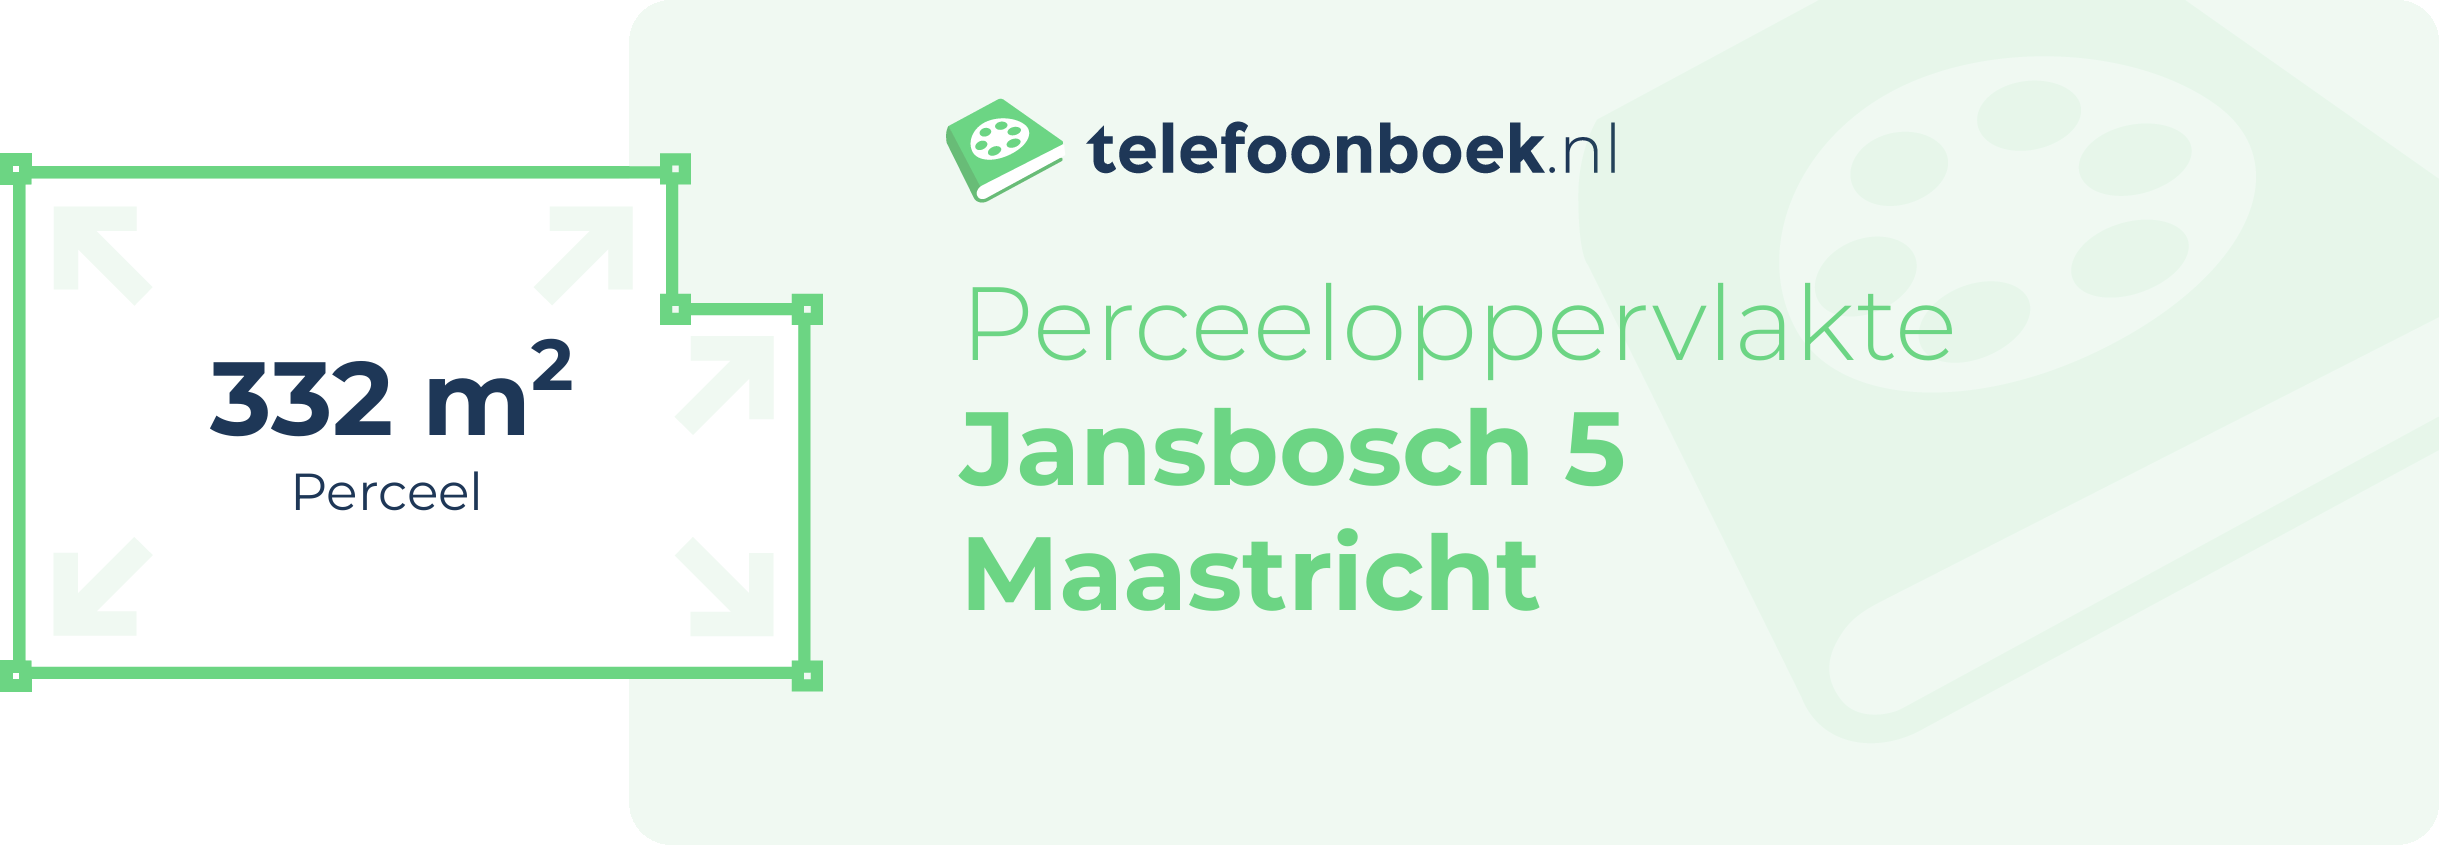 Perceeloppervlakte Jansbosch 5 Maastricht